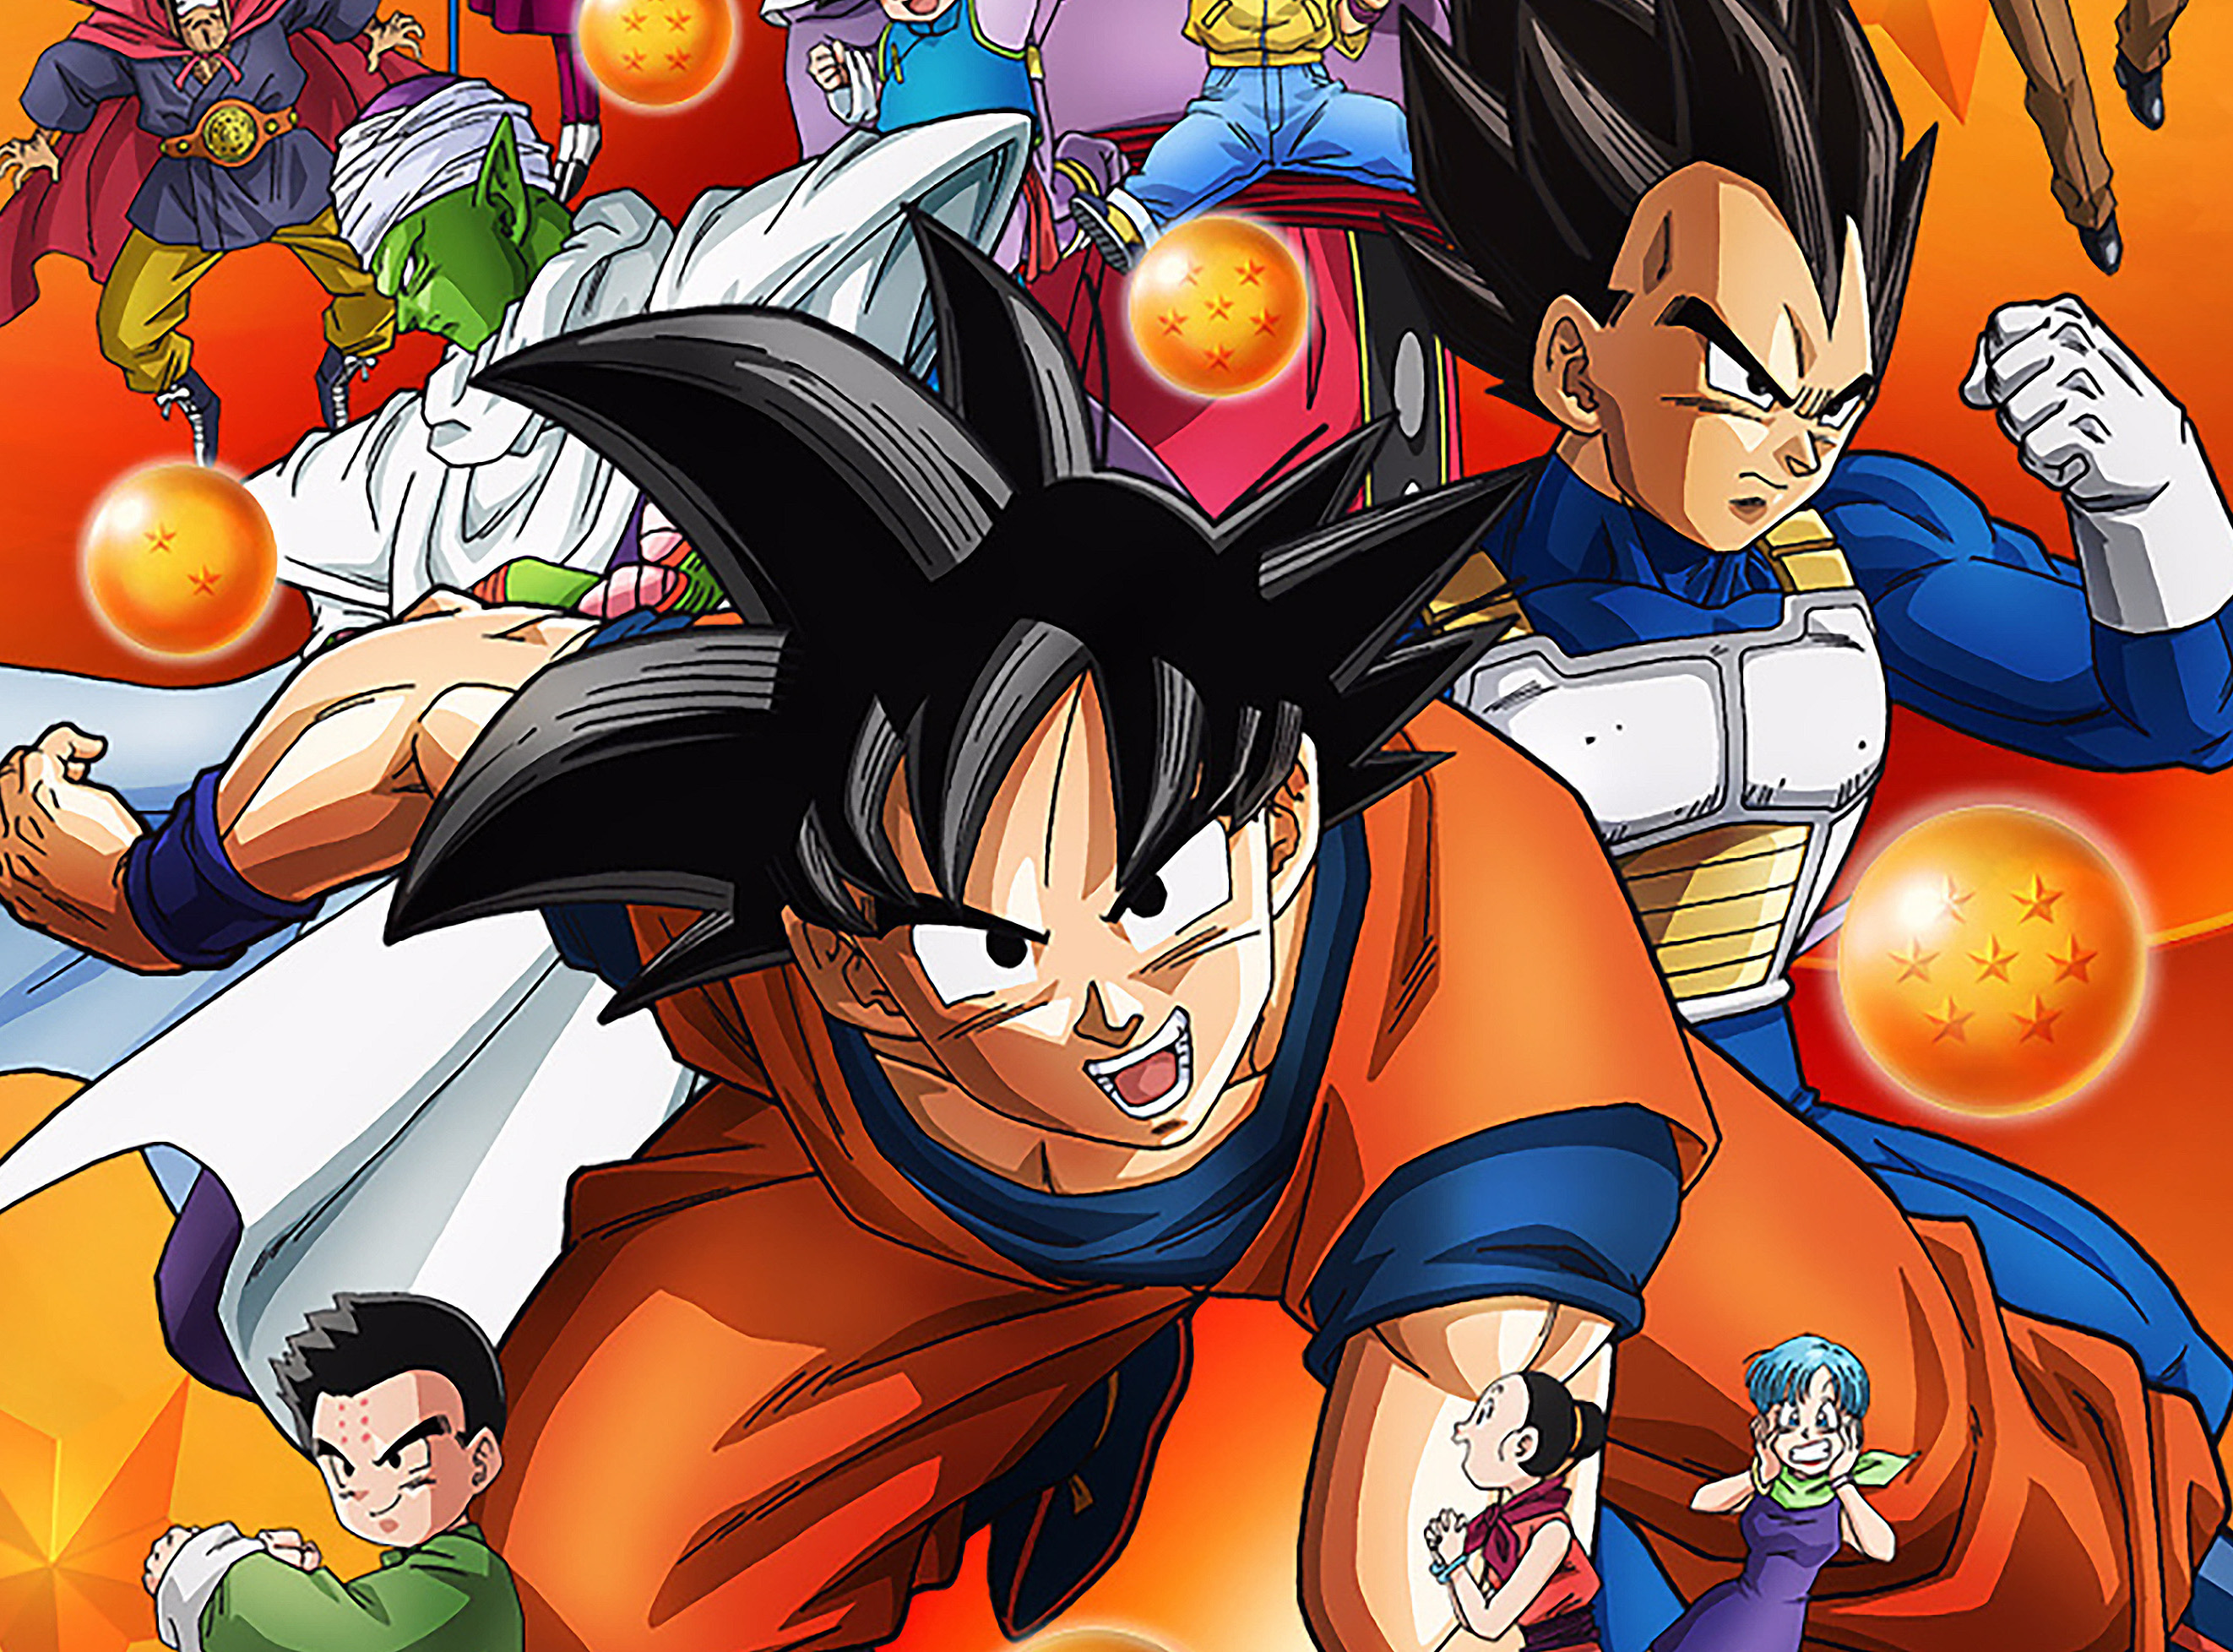 Guia de episódios Dragon Ball Super - AkibaSpace